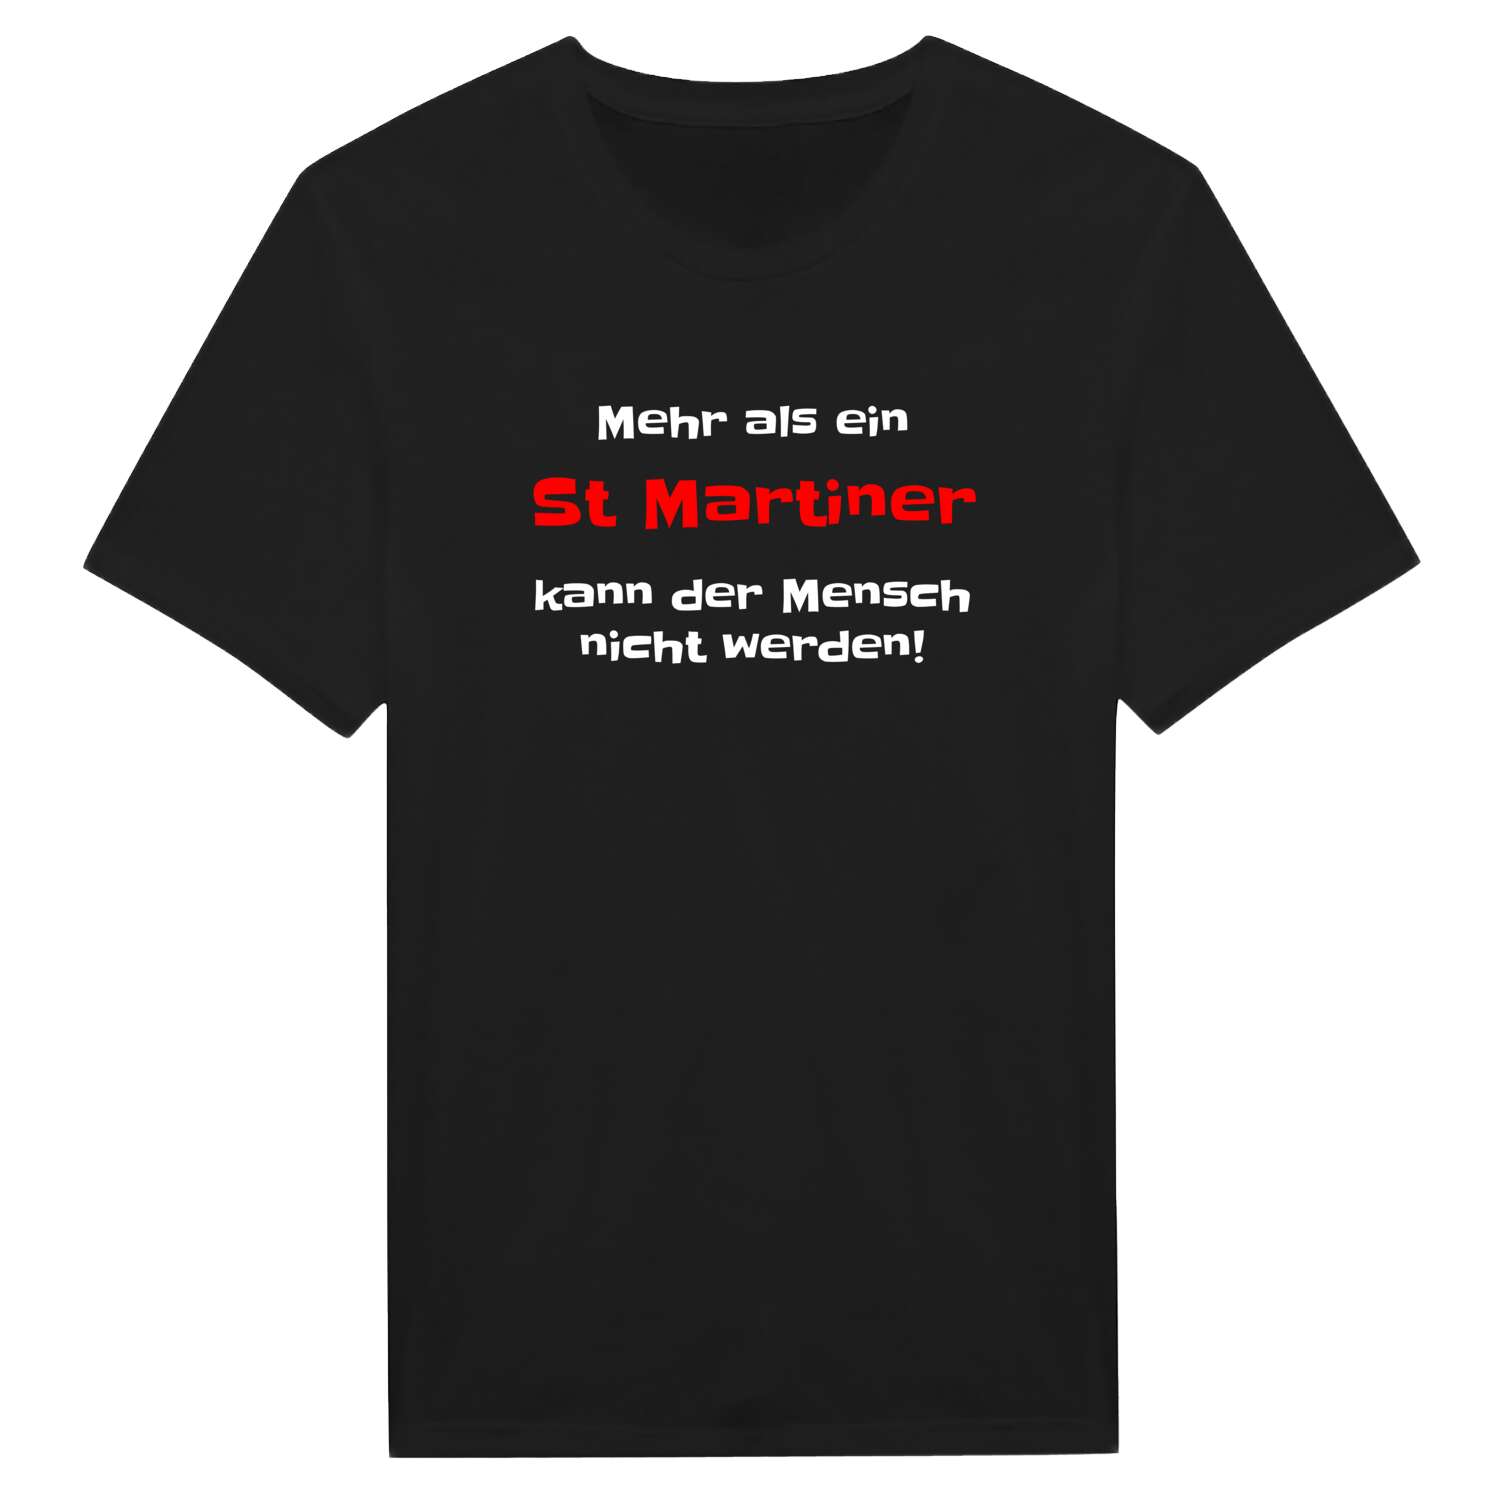 St Martin T-Shirt »Mehr als ein«